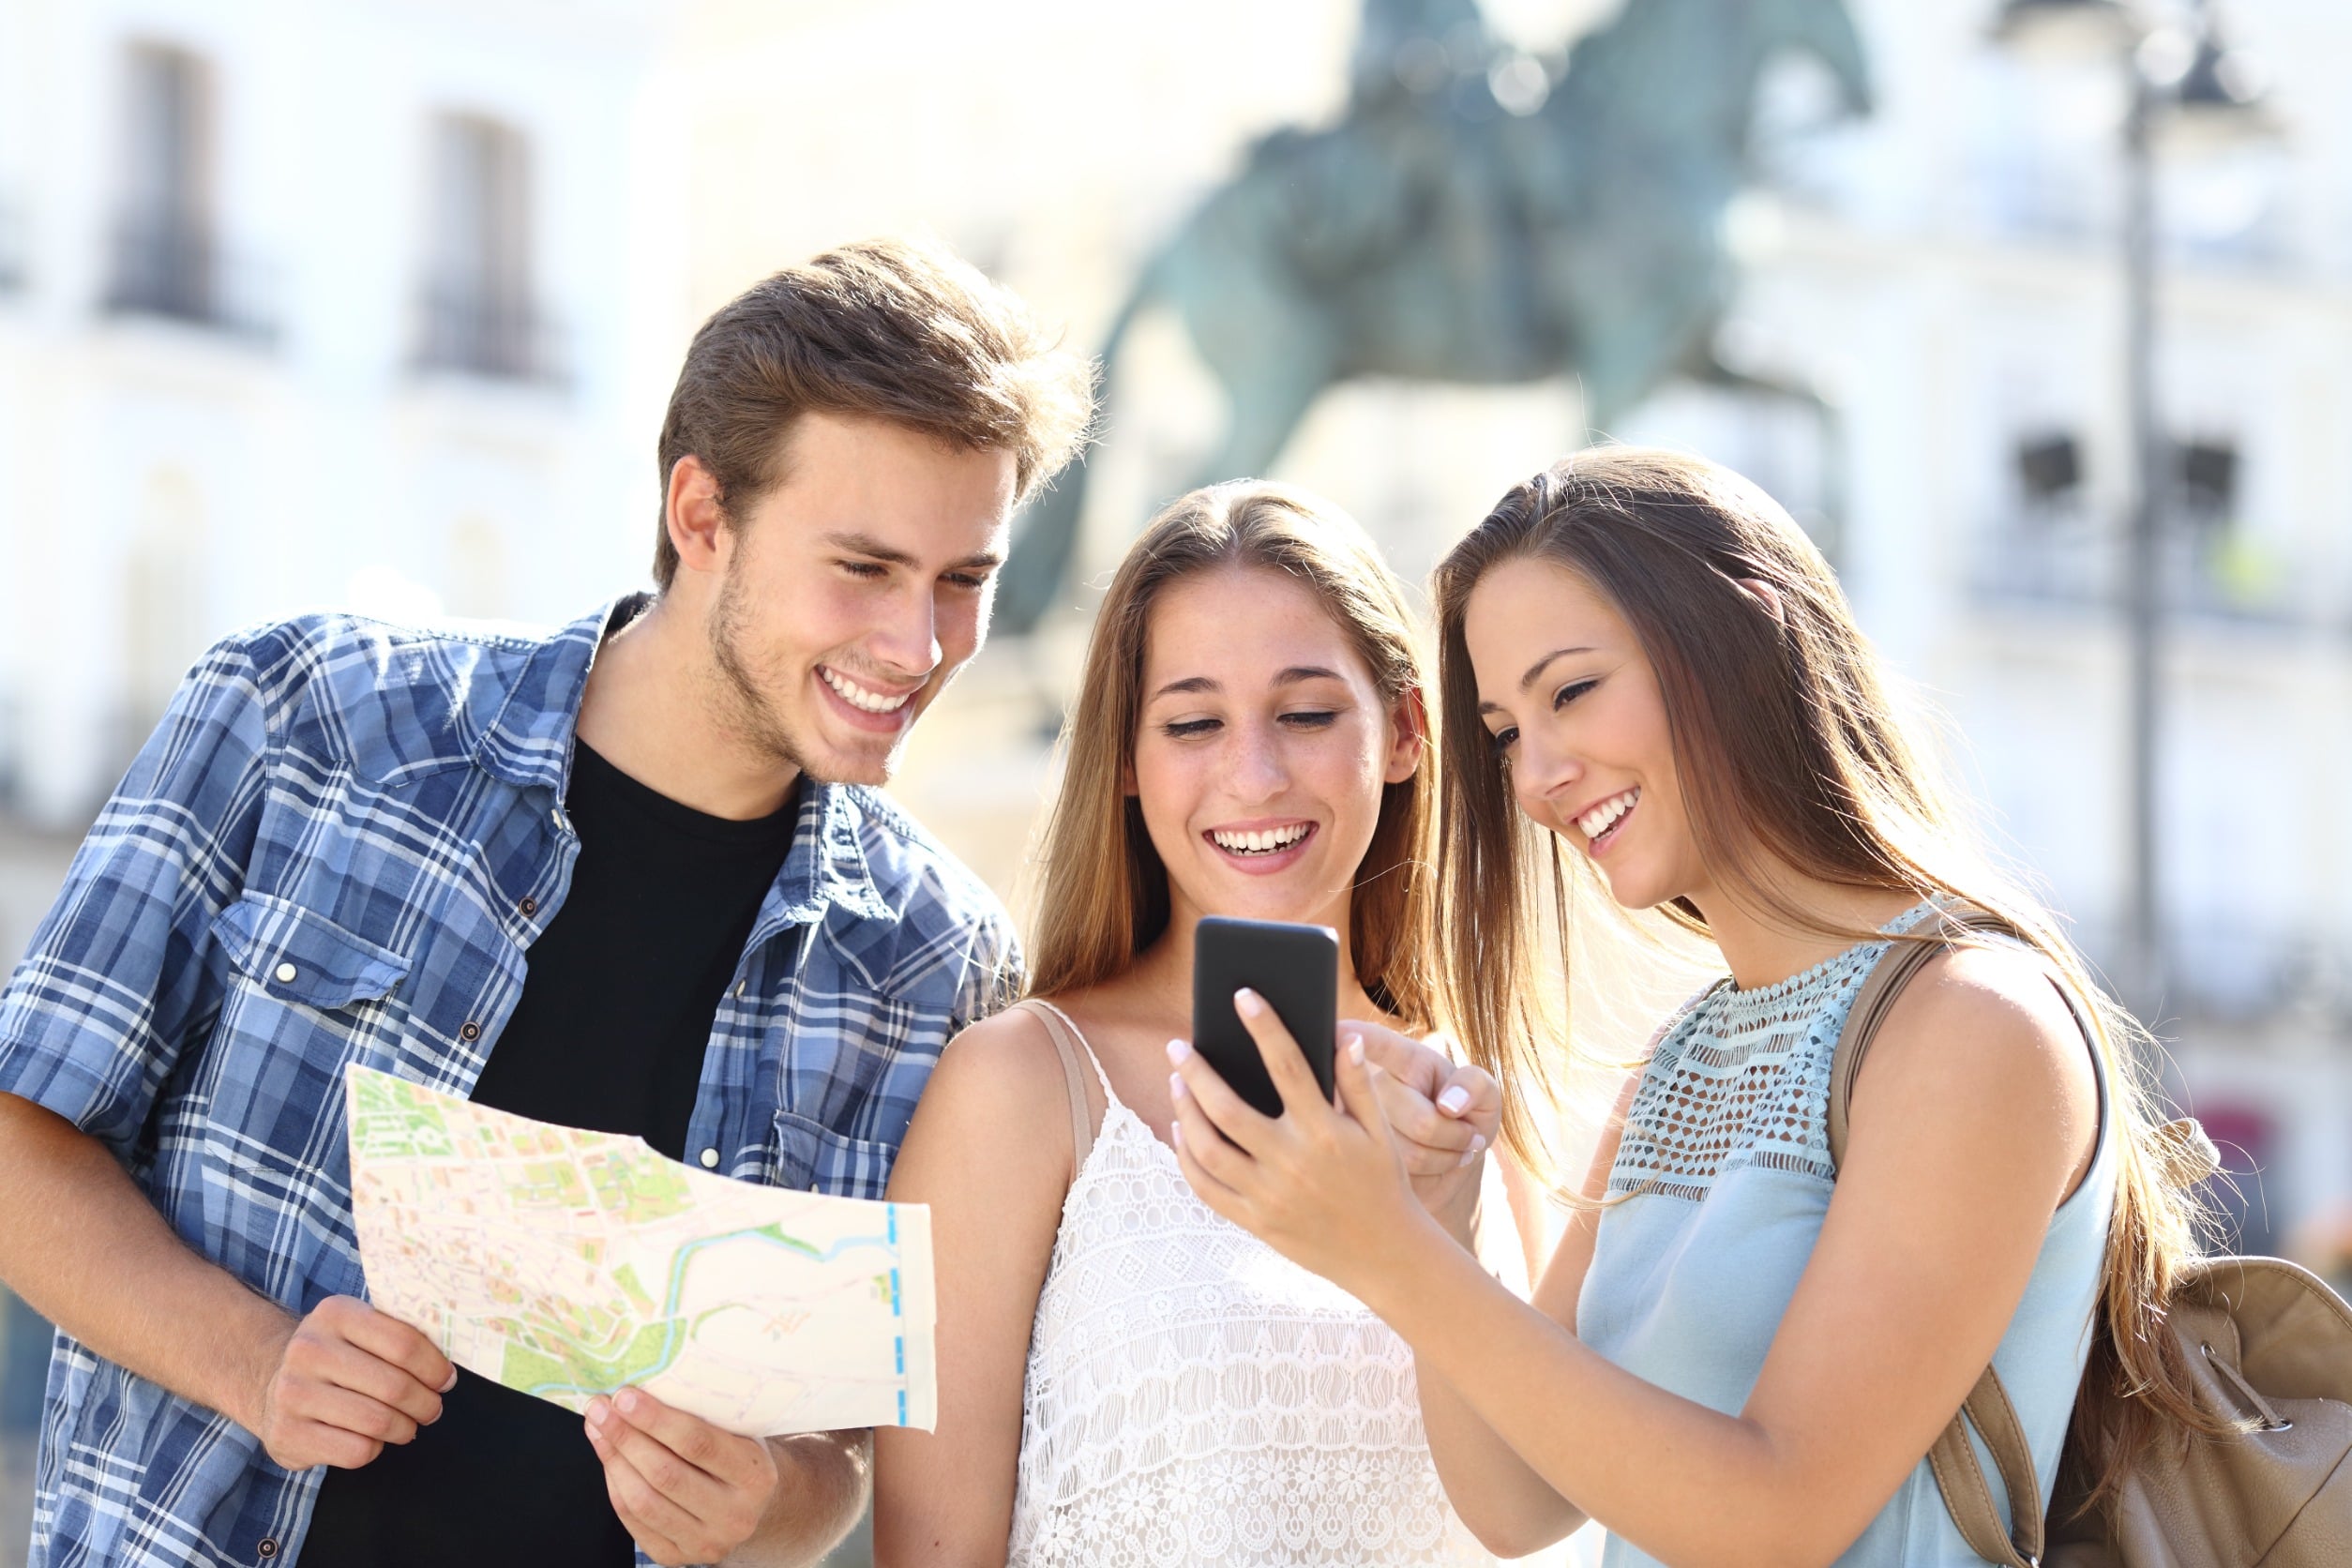 Un grupo de jóvenes formado por dos chicas y un chico, se encuentran en la calle revisando juntos un mapa y consultando un móvil